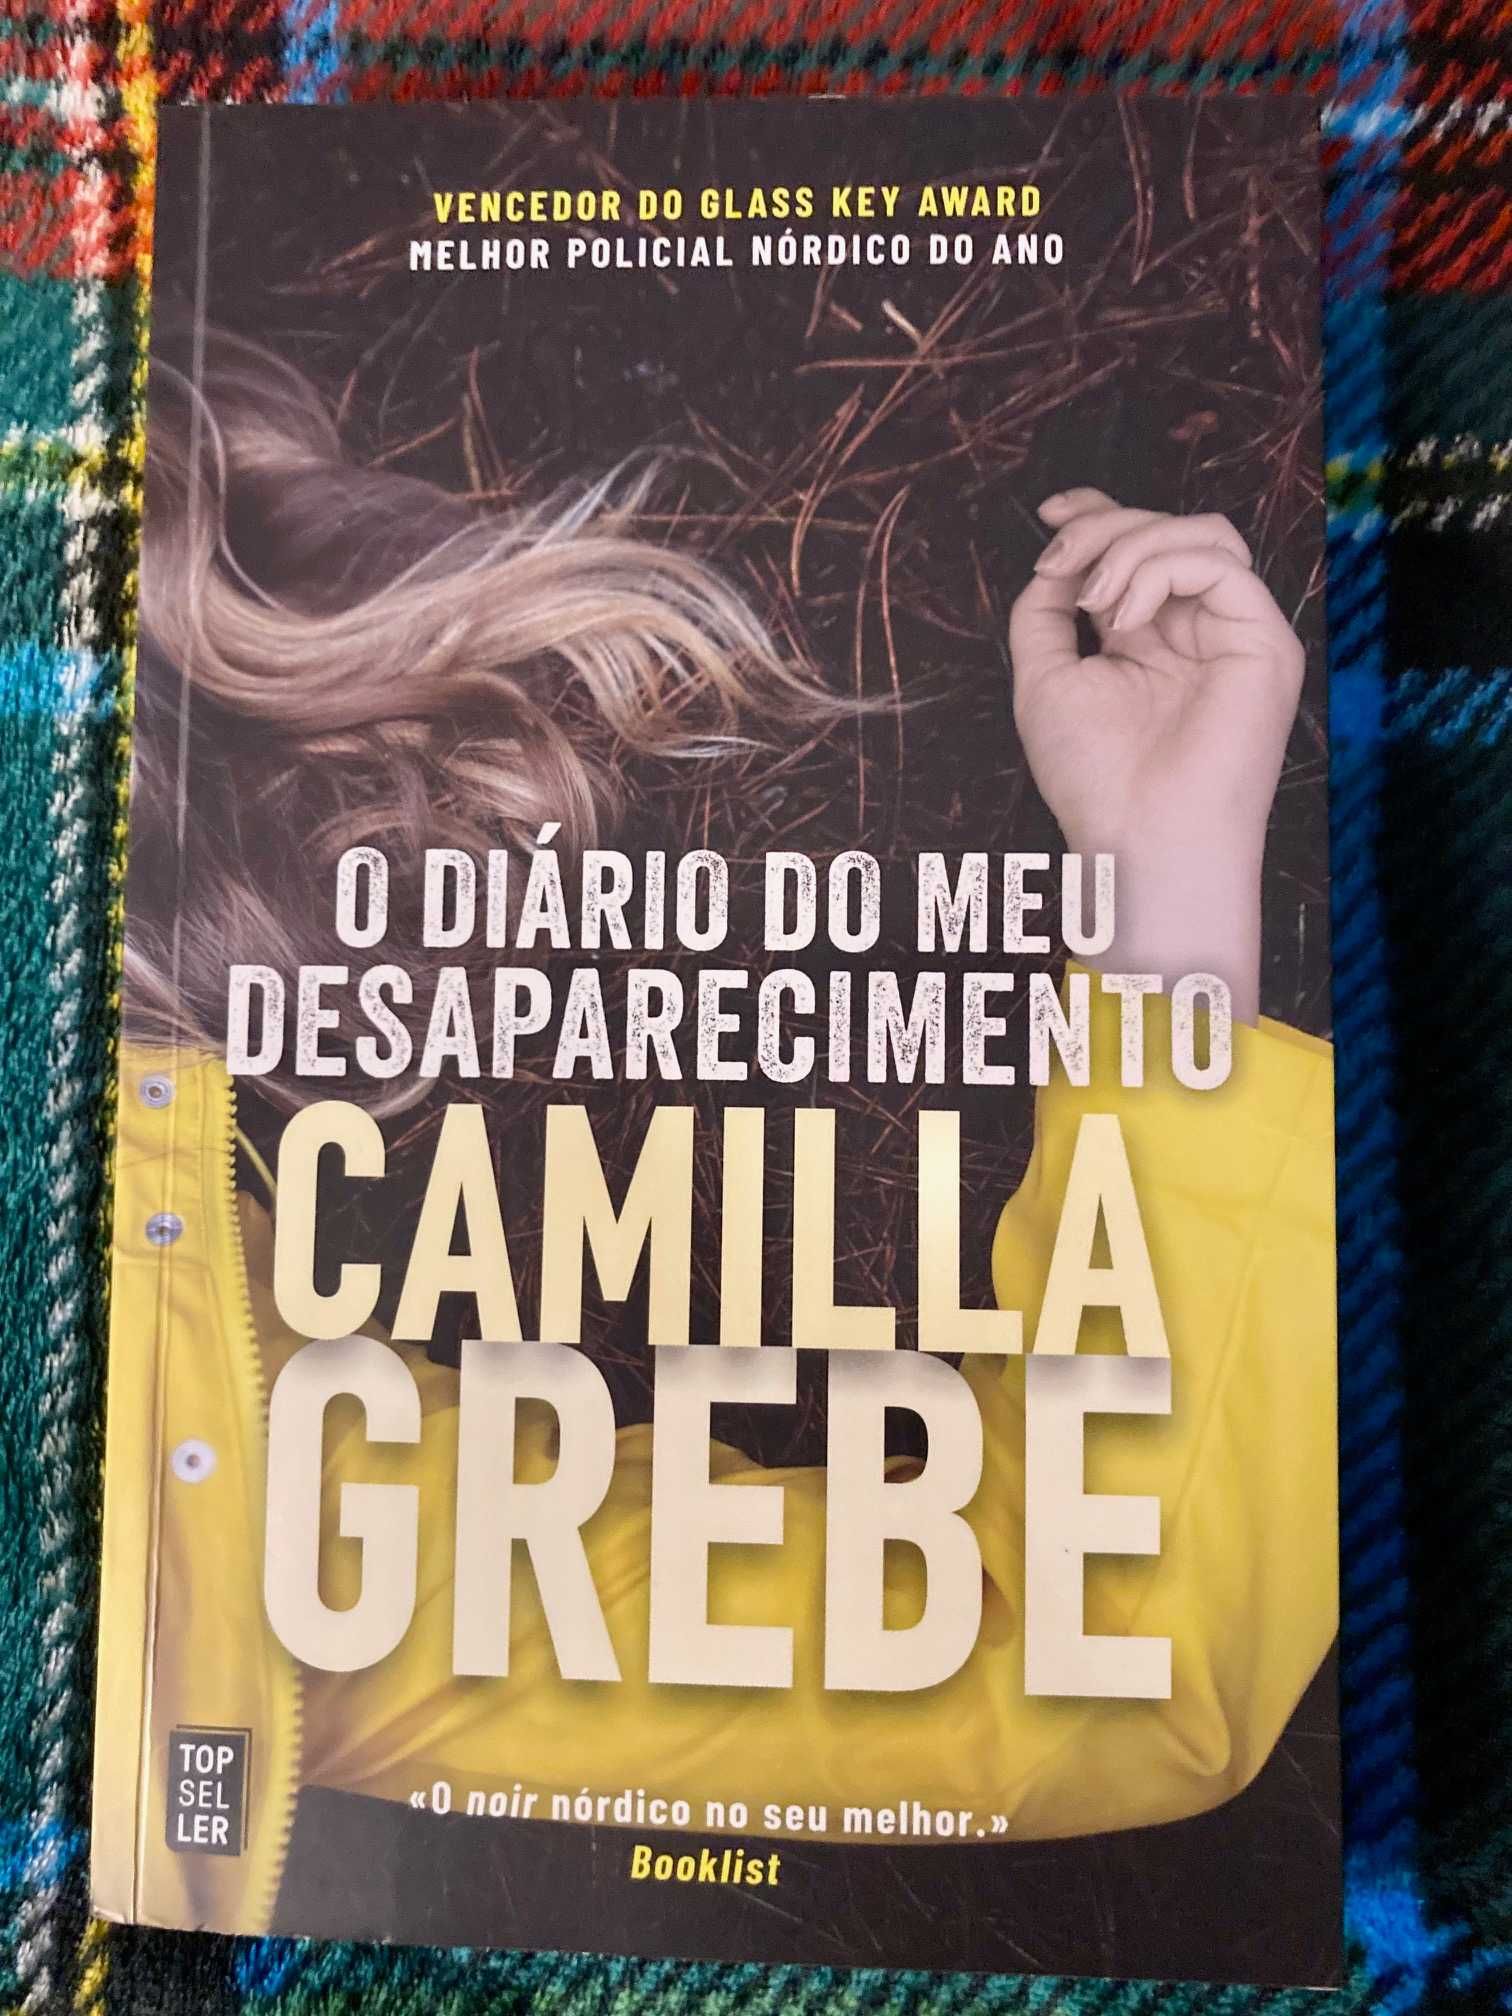 Livro "O Diário do Meu Desaparecimento" de Camilla Grebe.